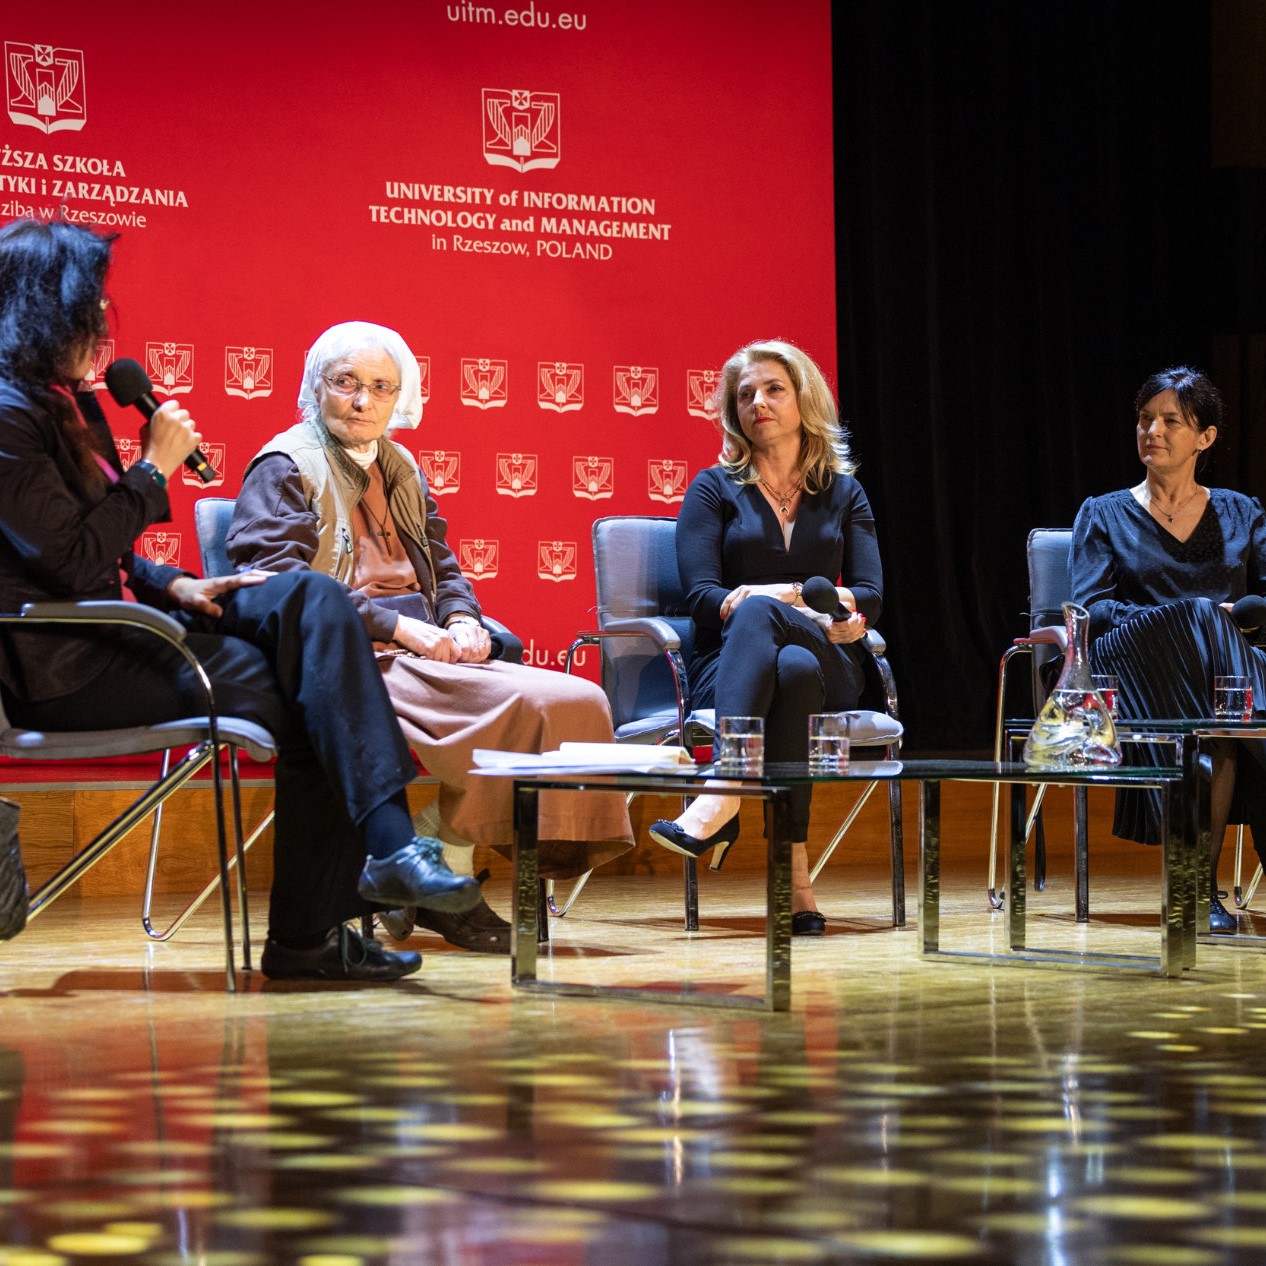 Scena - na krzesłach siedzą cztery kobiety. W tle rozstawiony jest duży, czerwony baner Wyższej Szkoły Informatyki i Zarządzania z siedzibą w Rzeszowie